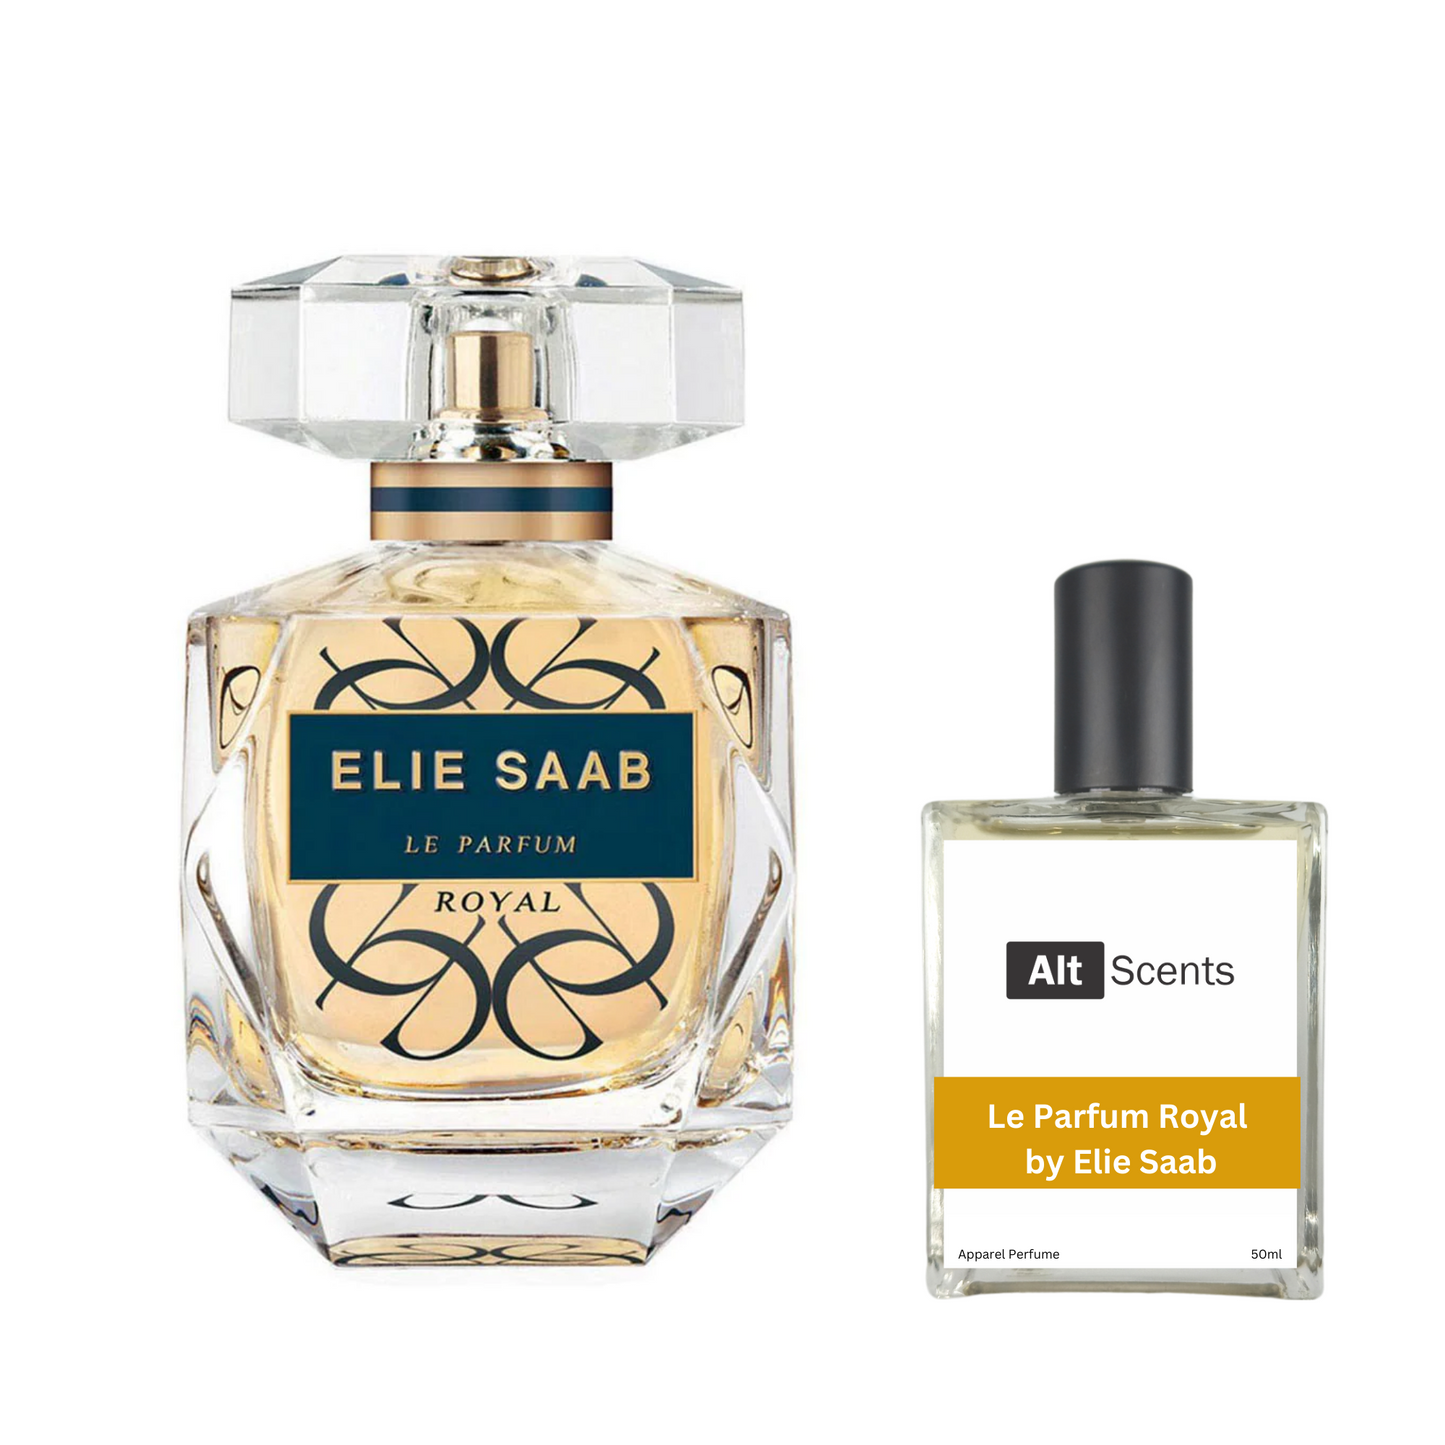 Le Parfum Royal by Elie Saab